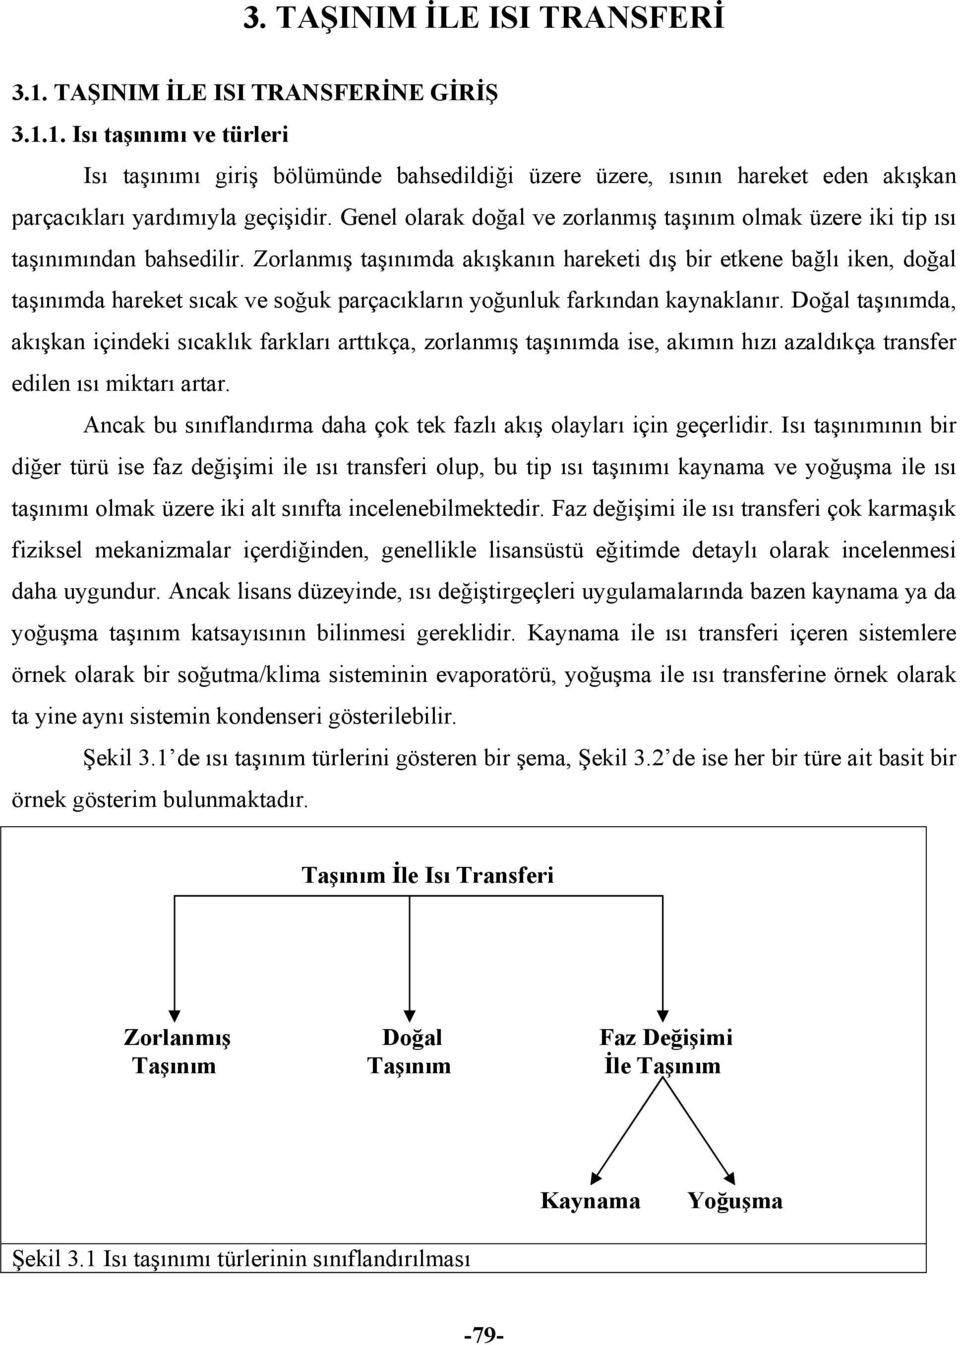 3. TAŞINIM İLE ISI TRANSFERİ - PDF Ücretsiz indirin